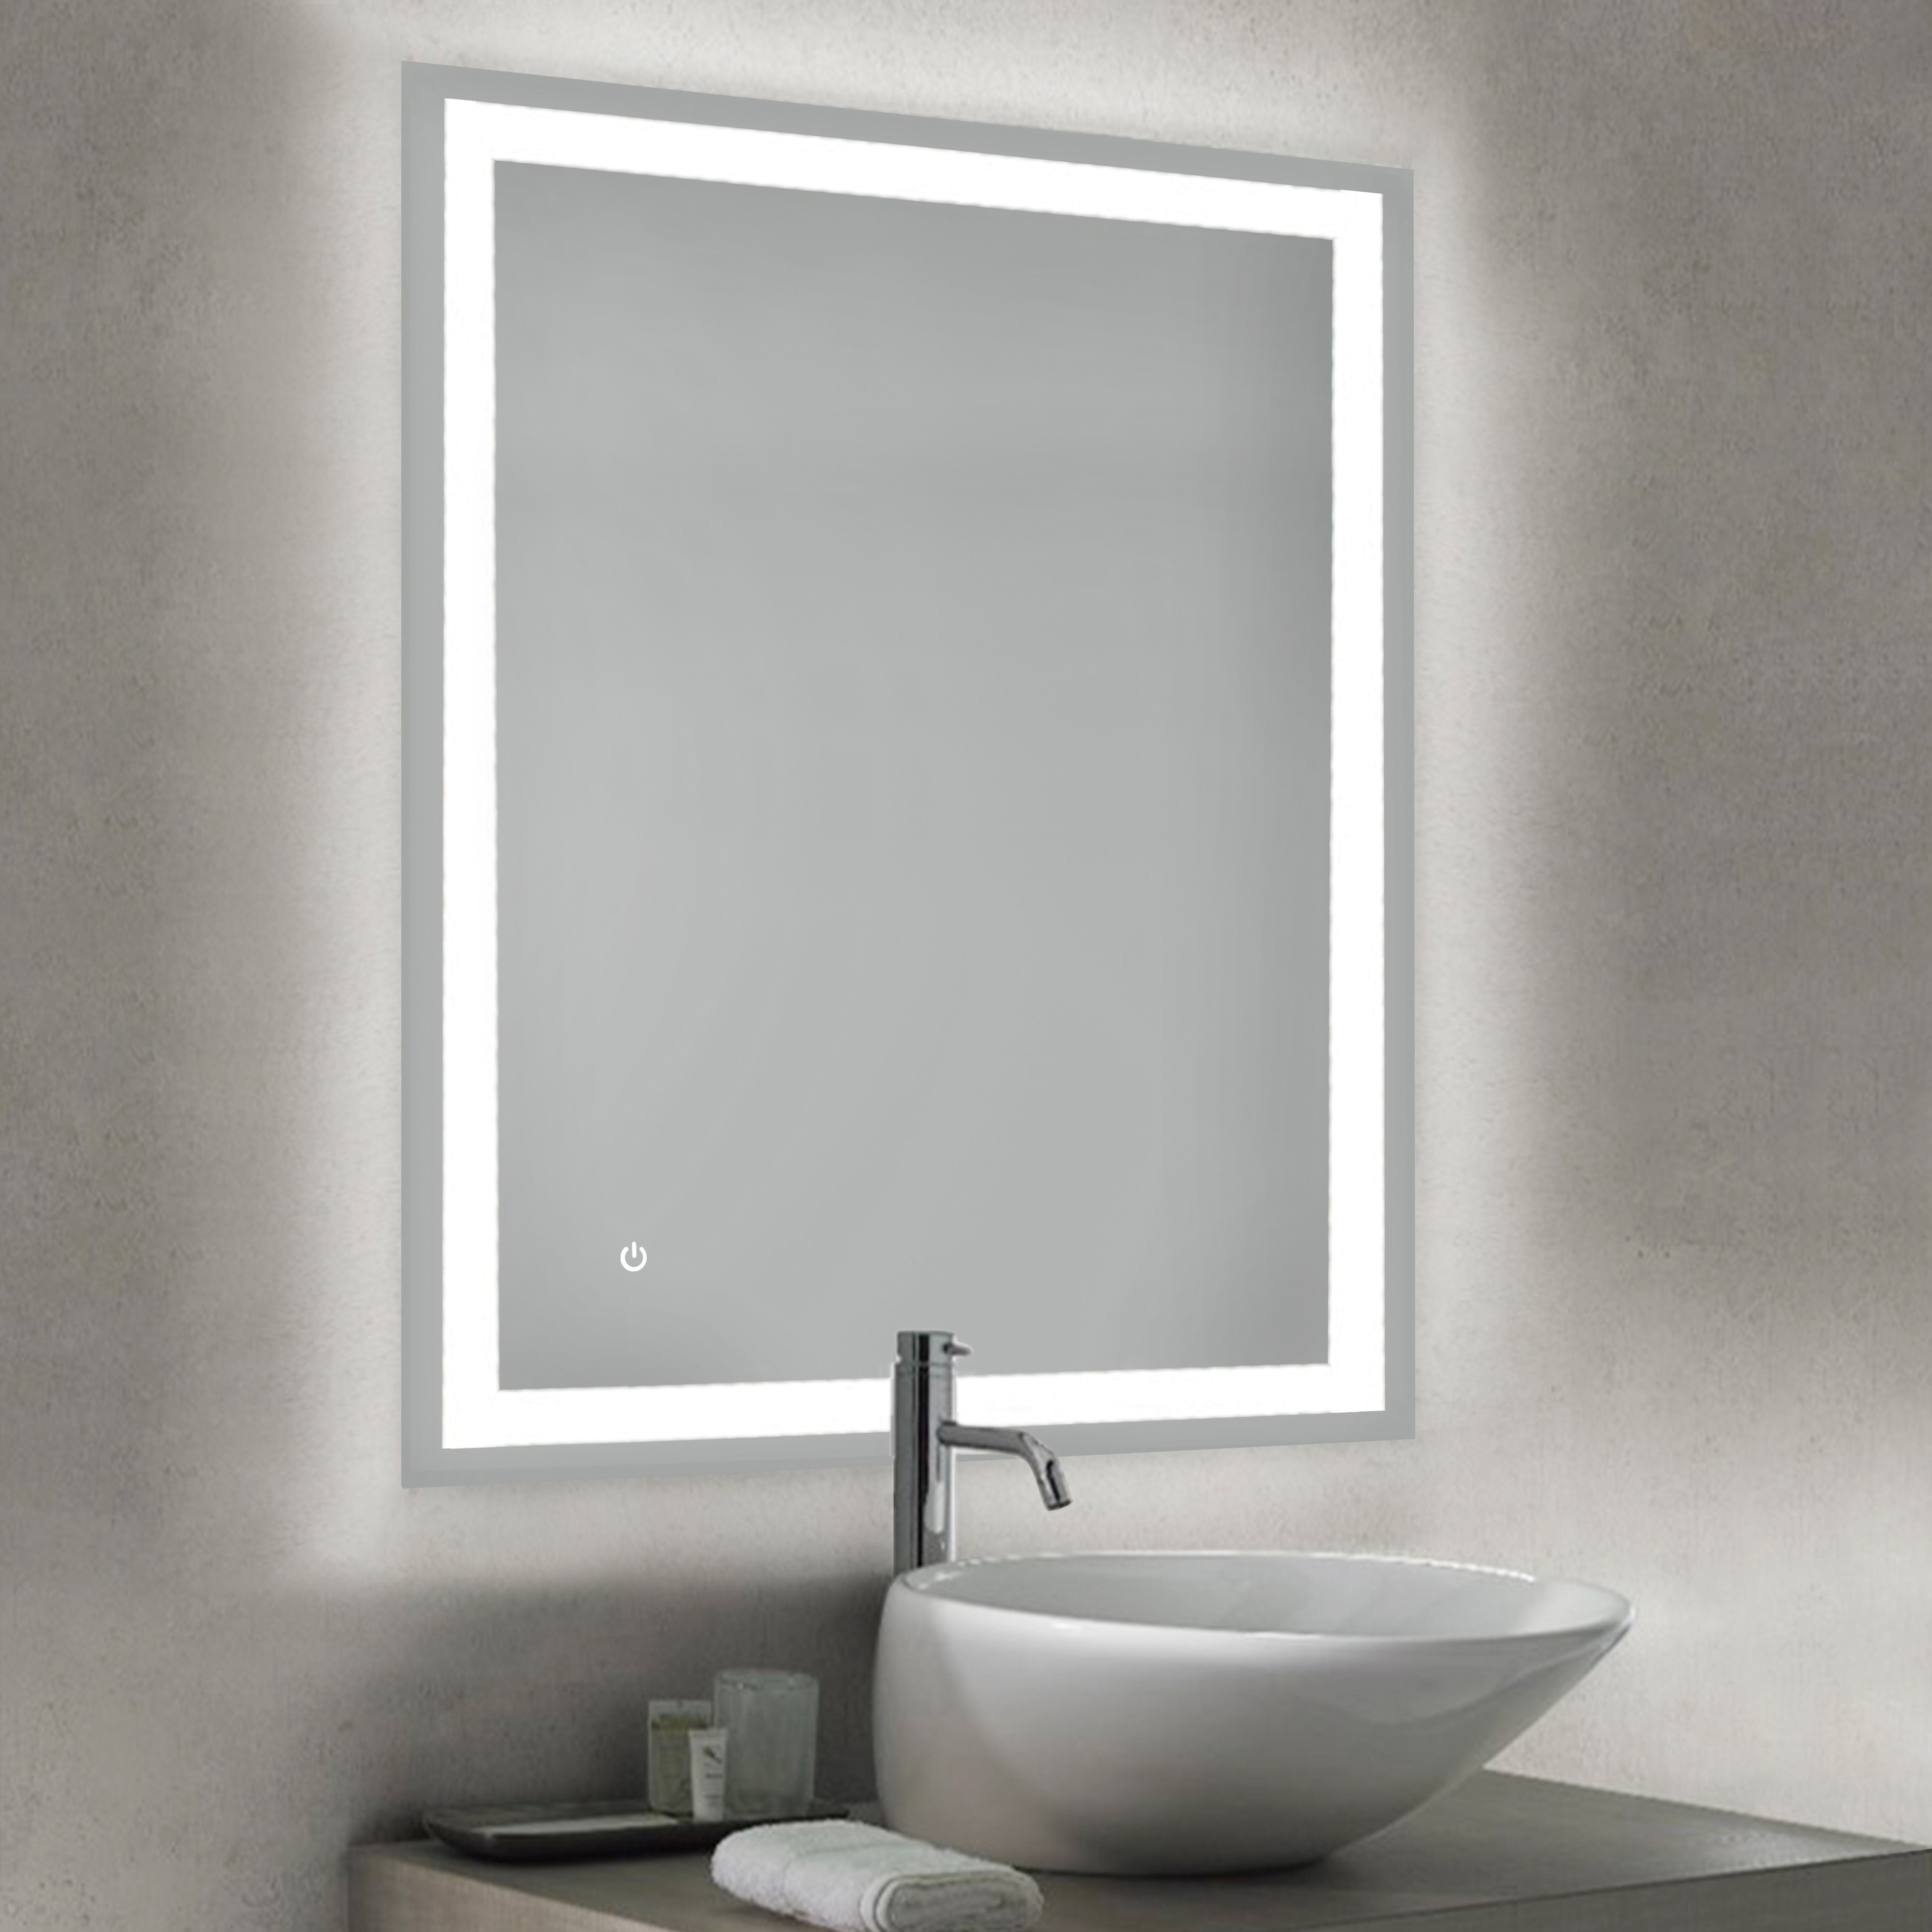  Miroir de salle de bain Heracles avec eclairage LED frontal et decoratif (AC 230V 50Hz), 34 W, Plastique et Verre